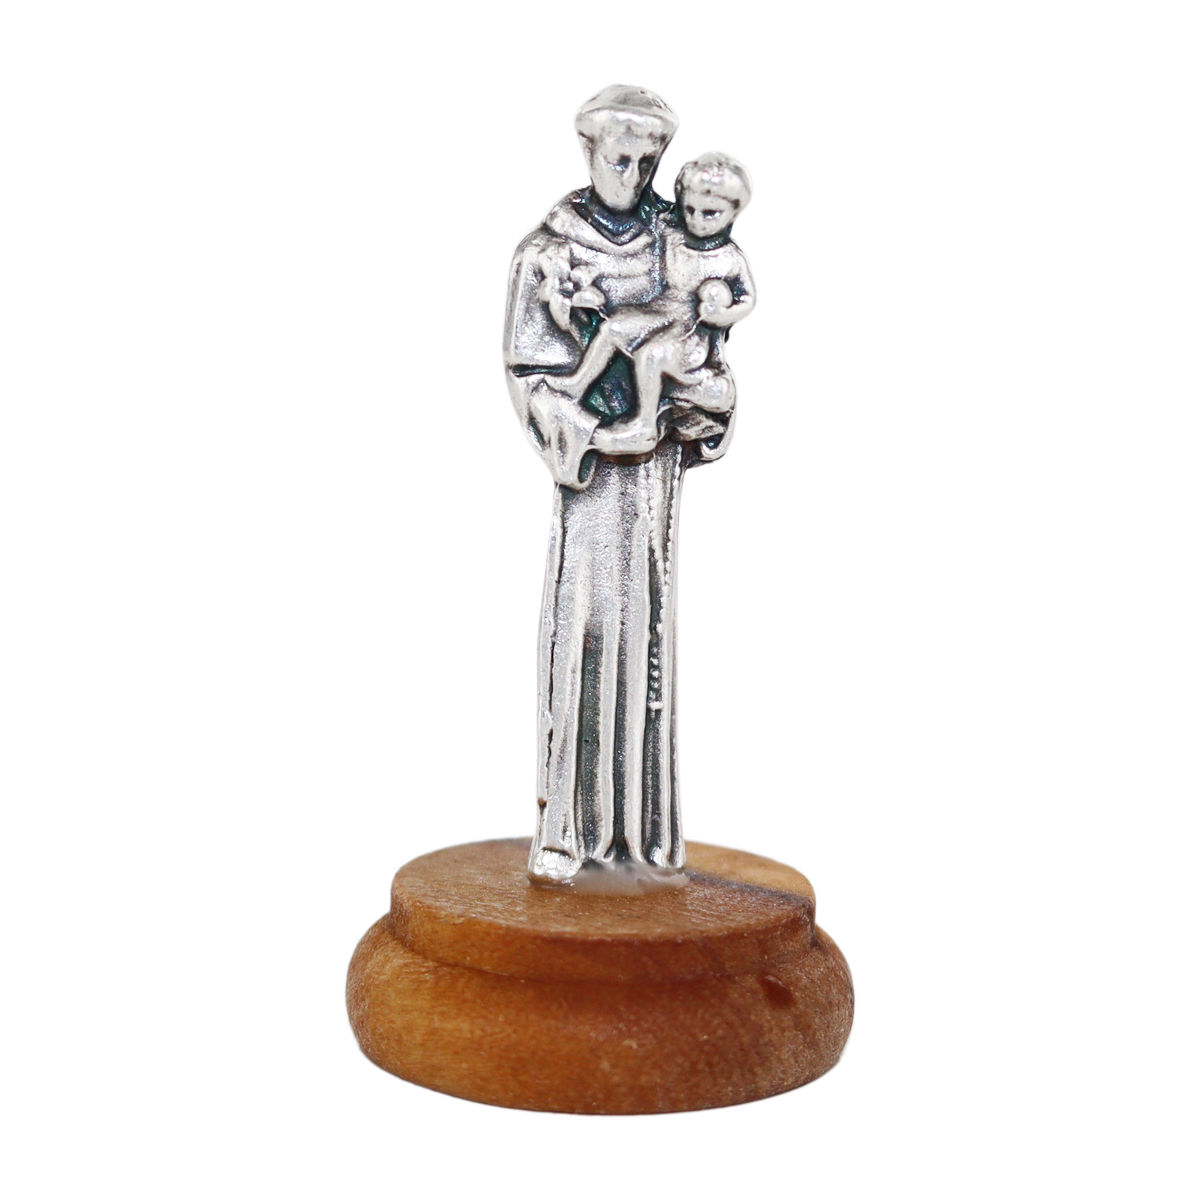 Statue en métal sur socle bois ovale, Hauteur 4.8 cm, plusieurs saints.